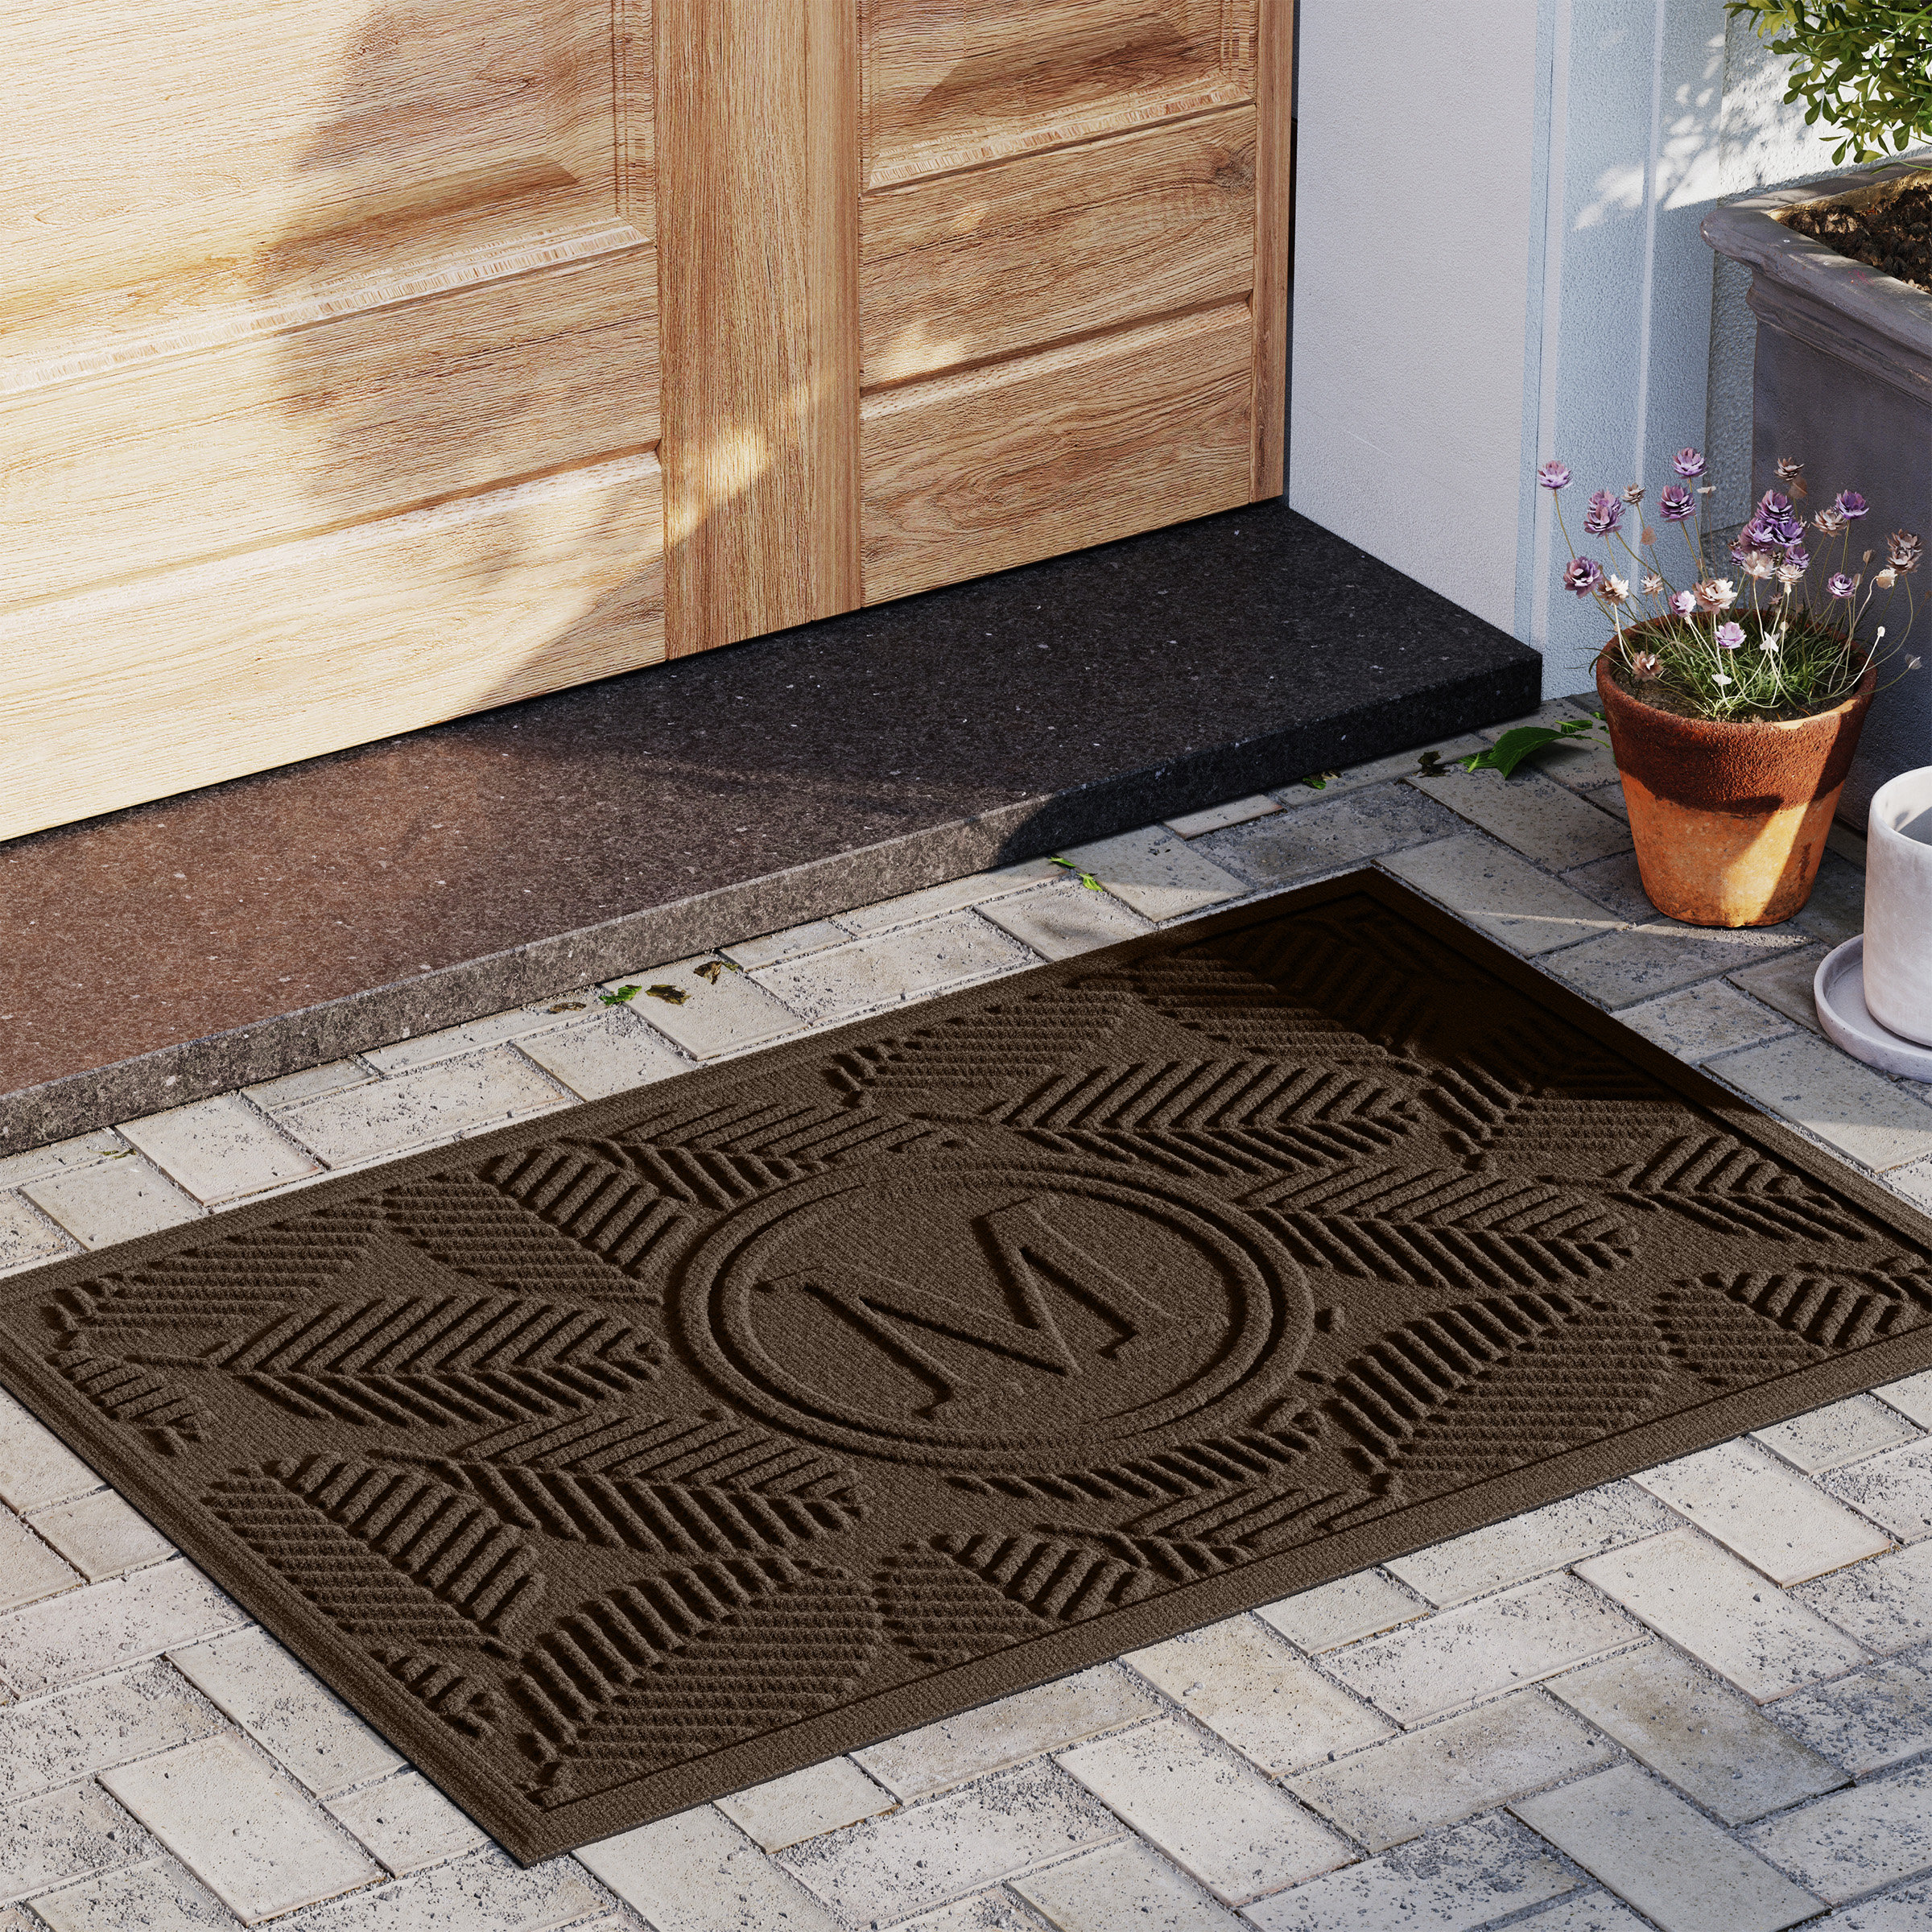 https://assets.wfcdn.com/im/24595084/compr-r85/2225/222562168/waterhog-deanna-monogram-23-in-x-35-in-indoor-outdoor-door-mat.jpg